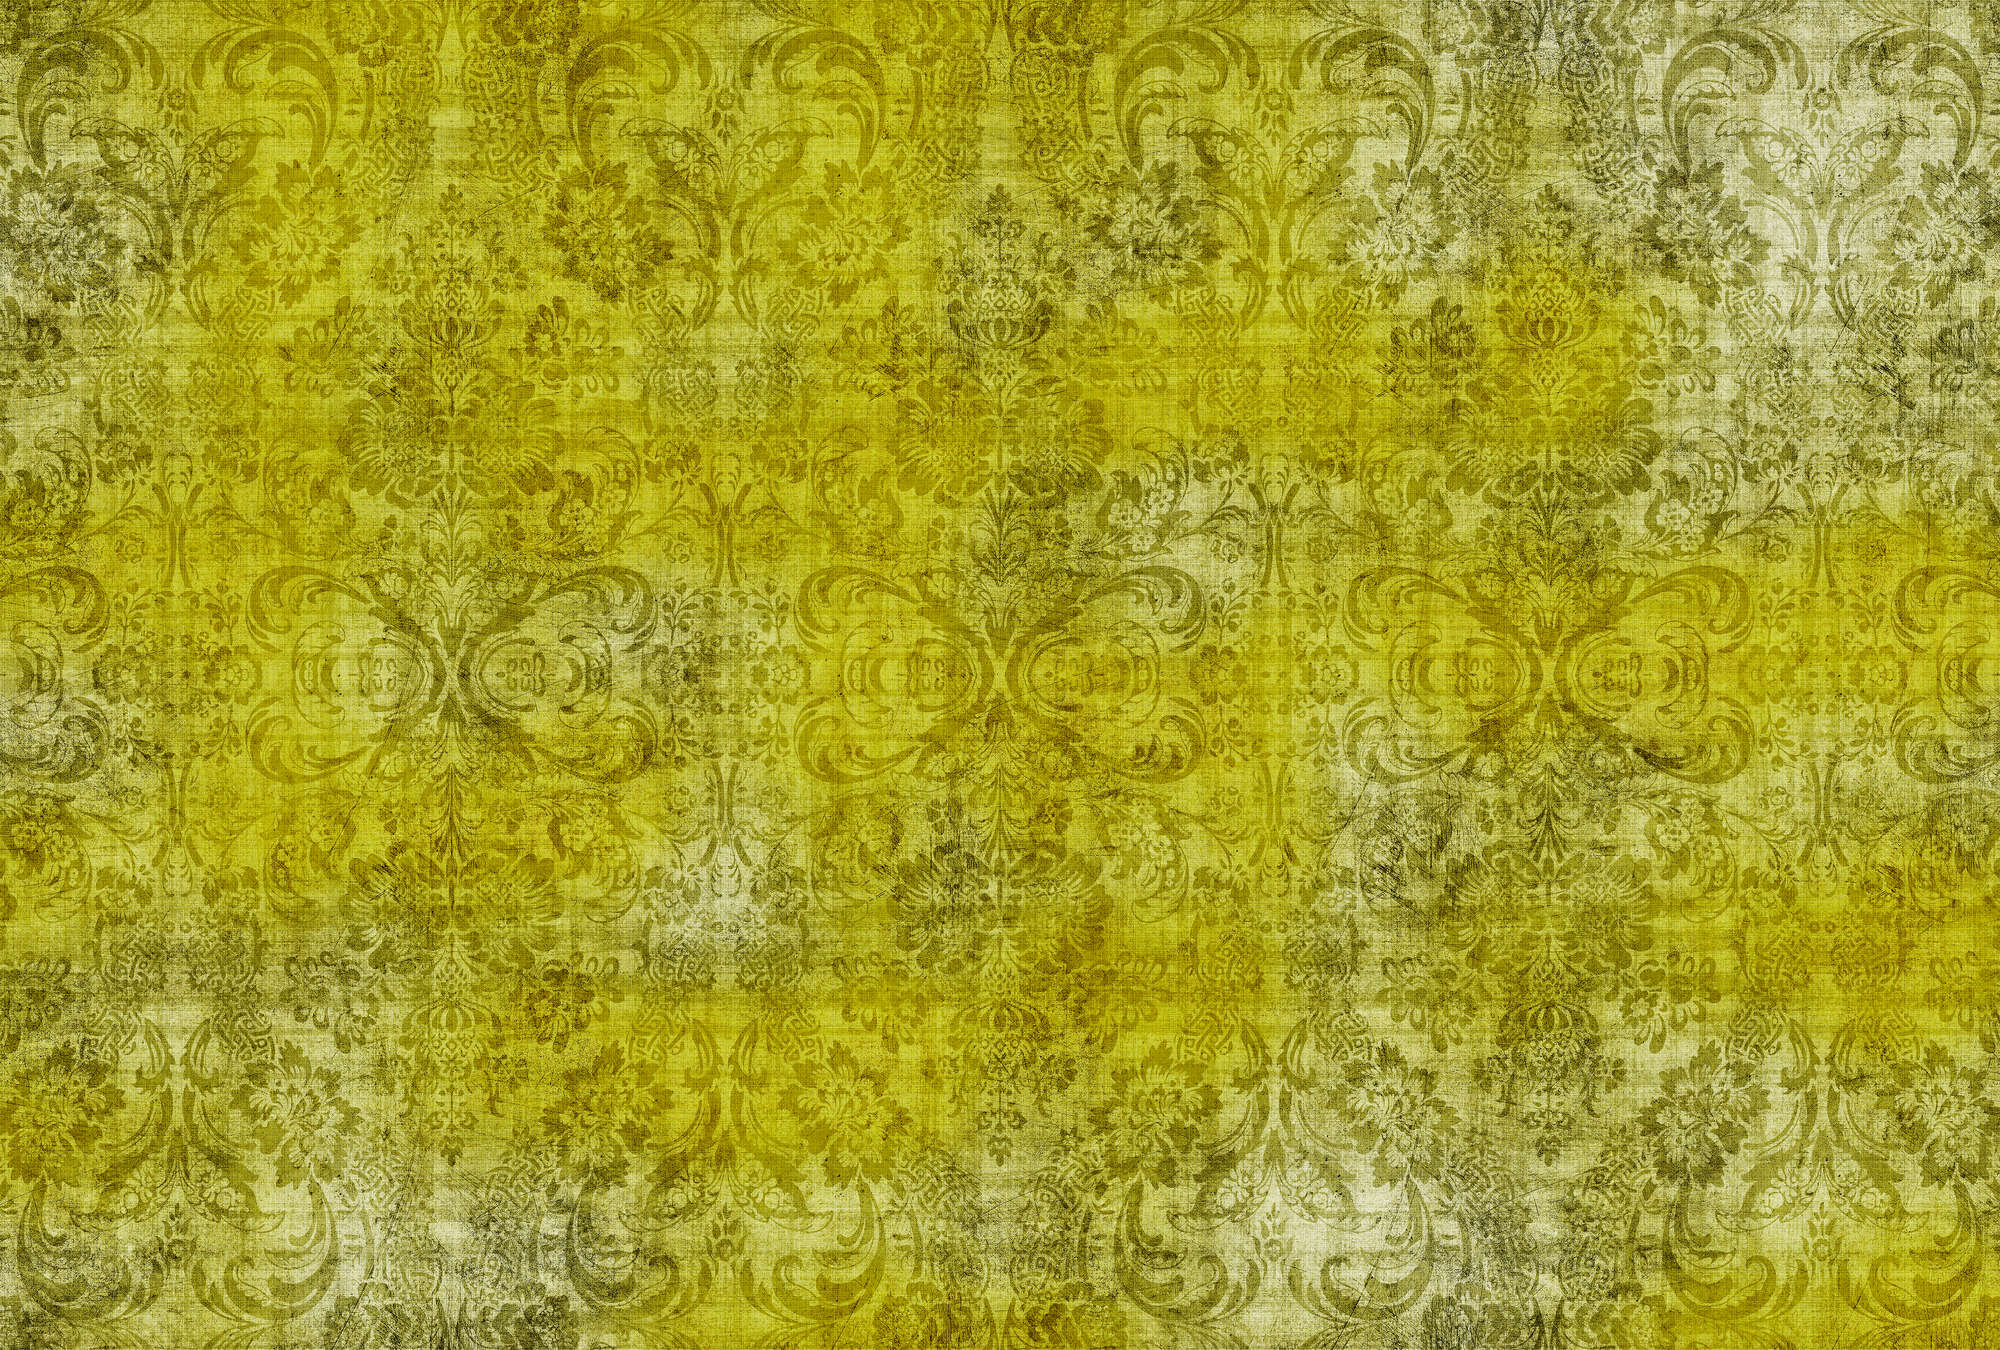             Oud damast 1 - Ornamenten op geel-motief fotobehang in natuurlijke linnenstructuur - Geel | Premium glad vlies
        